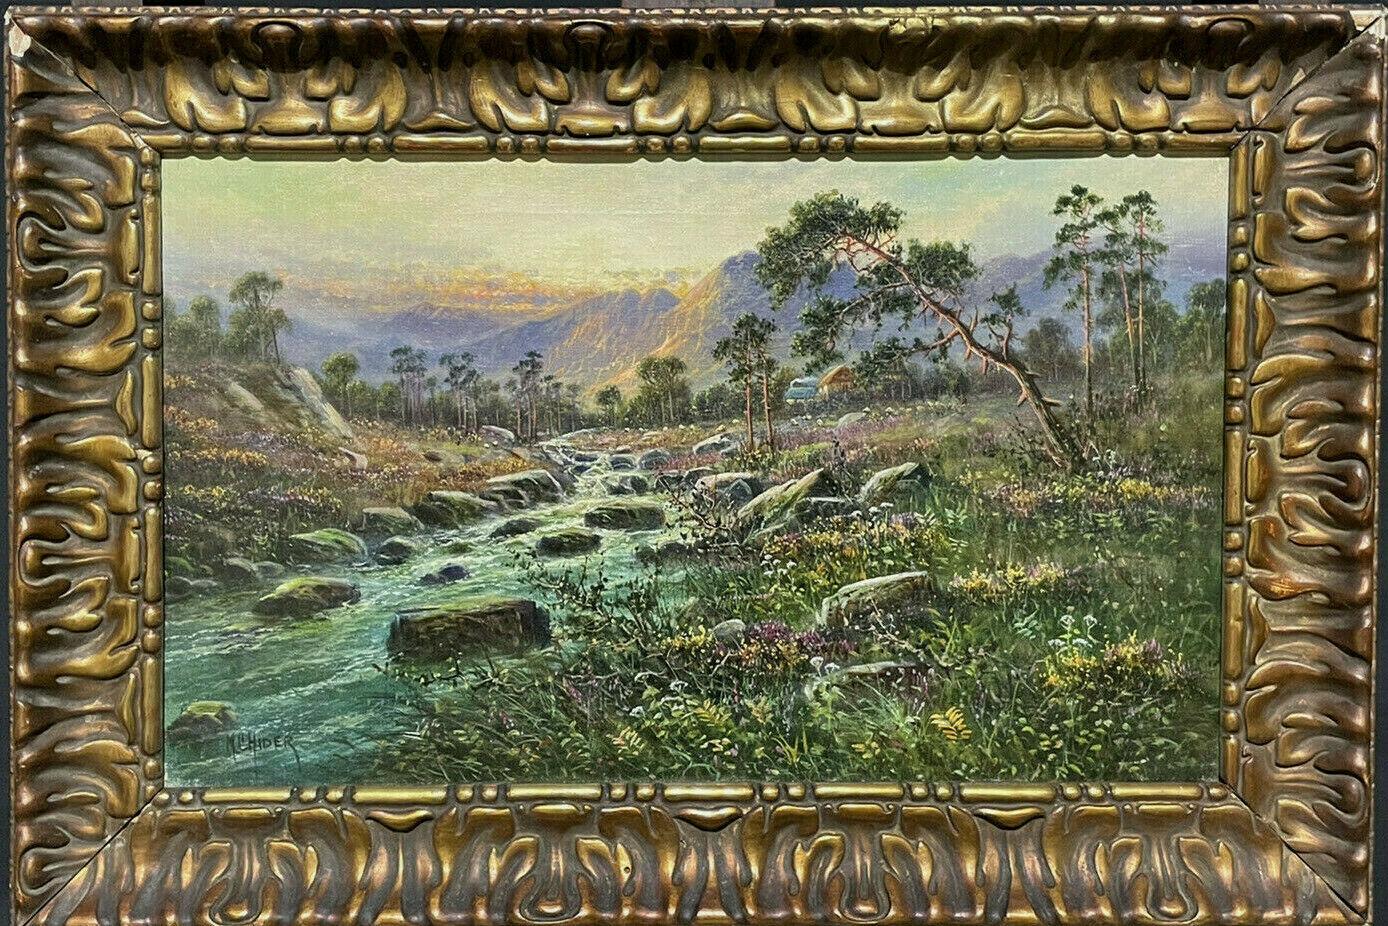 M.C Hider Landscape Painting - ANTIQUE SCOTTISH SIGNED OIL - WEST ARRAN SCOTLAND - SUNSET OVER HIGHLAND RIVER